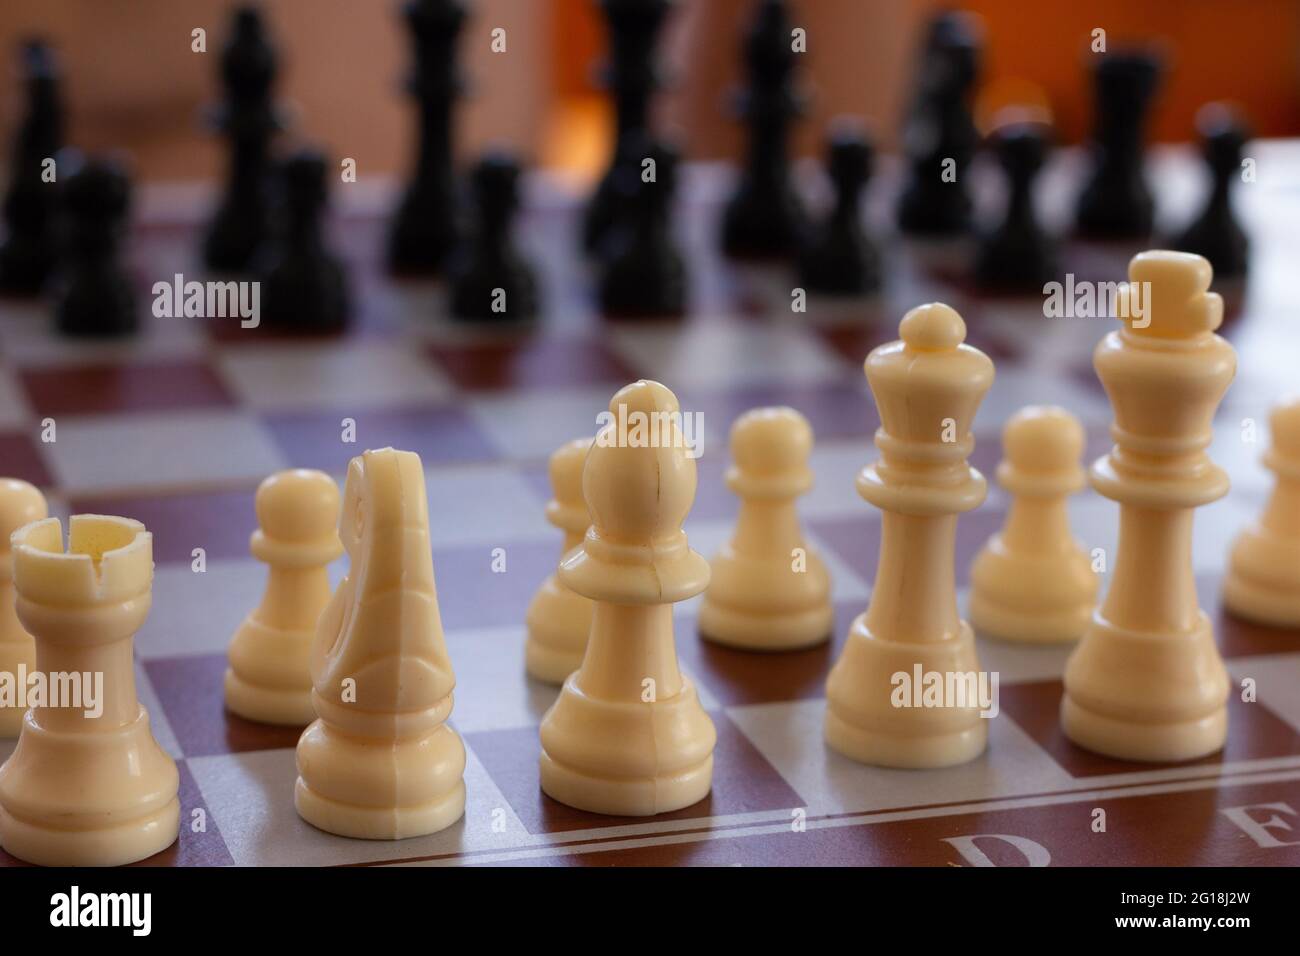 Gros plan sur les pièces blanches de l'échiquier. Jeux d'échecs, stratégie, concepts d'intelligence Banque D'Images